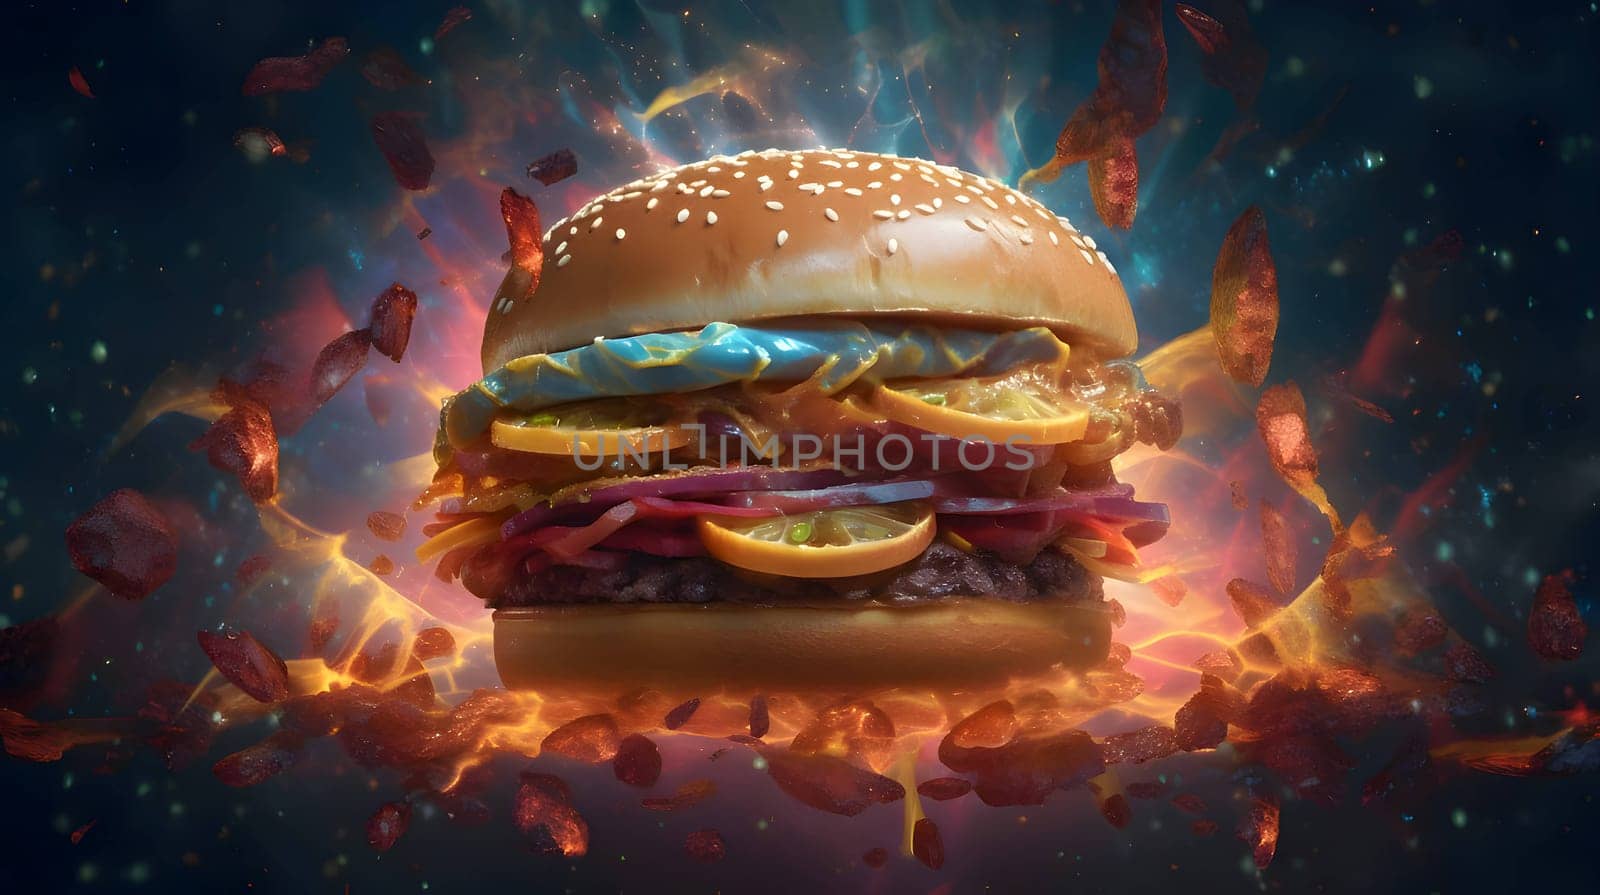 A beautiful image of a hamburger with lemon. by ThemesS